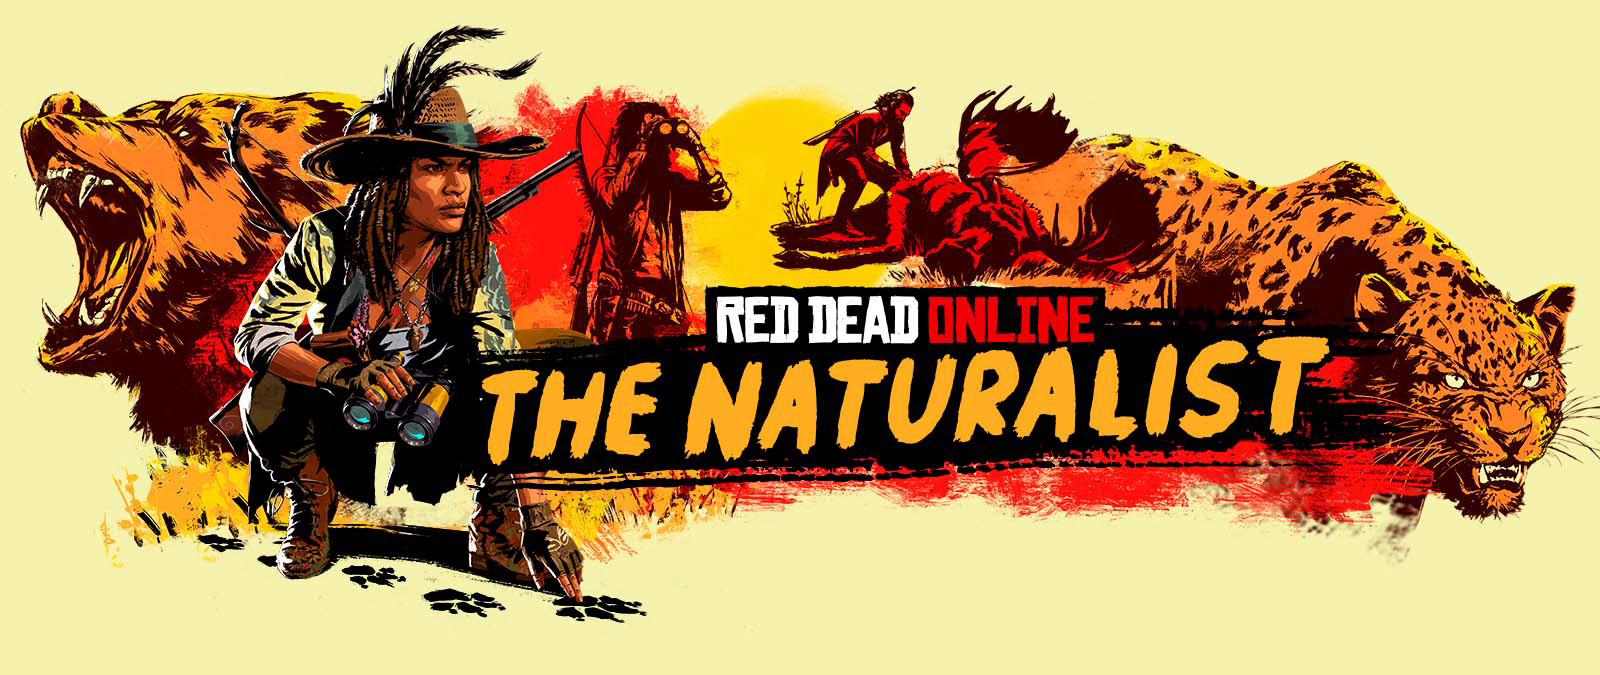 Red Dead Online. The Naturalist. Charaktere, die große Tiere verfolgen und jagen.